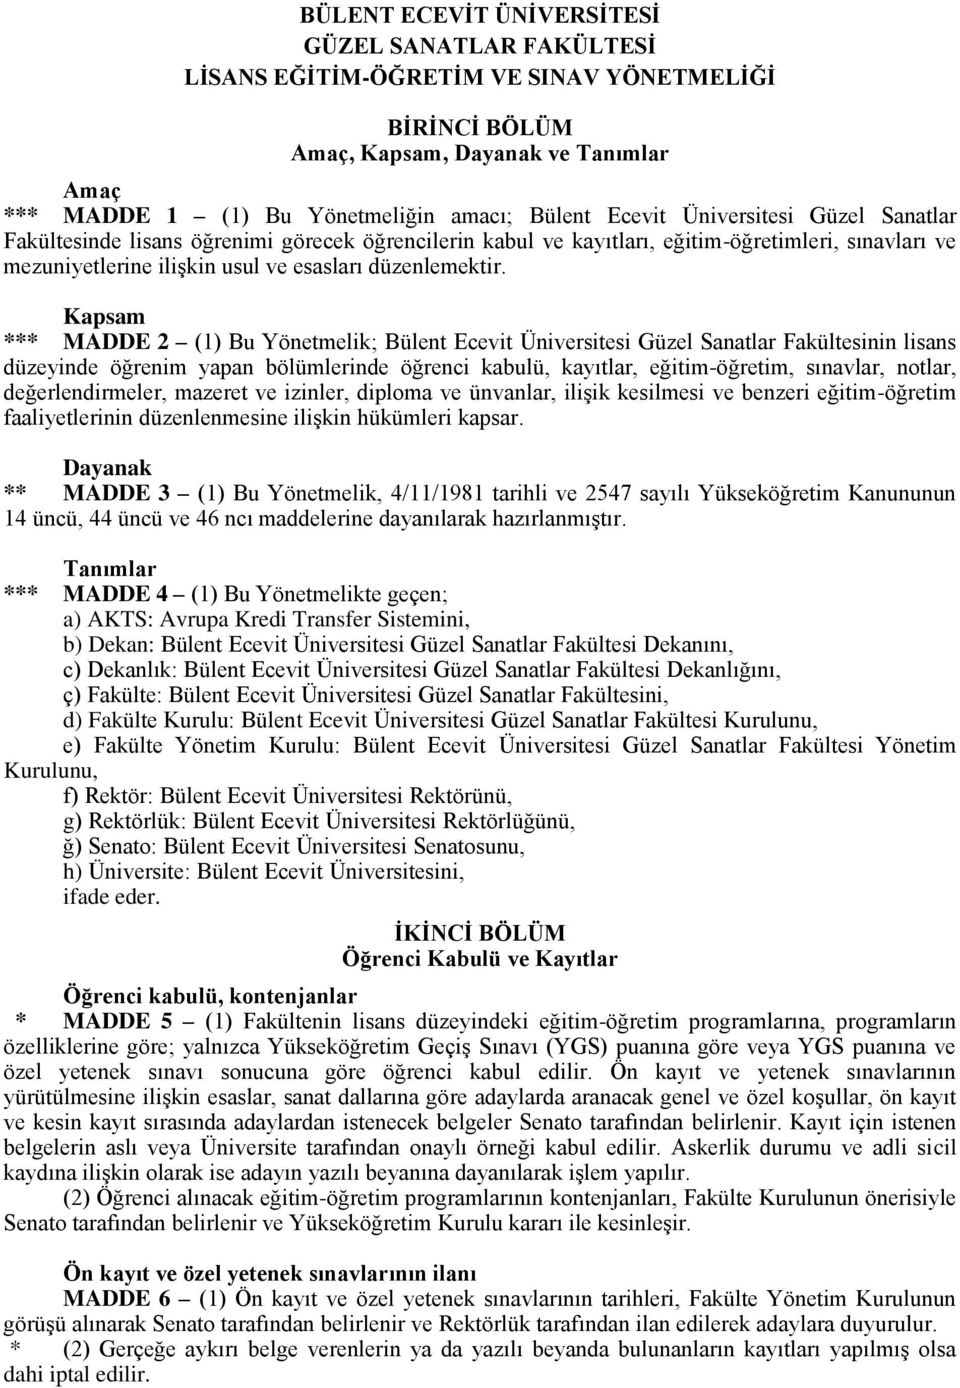 Kapsam *** MADDE 2 (1) Bu Yönetmelik; Bülent Ecevit Üniversitesi Güzel Sanatlar Fakültesinin lisans düzeyinde öğrenim yapan bölümlerinde öğrenci kabulü, kayıtlar, eğitim-öğretim, sınavlar, notlar,